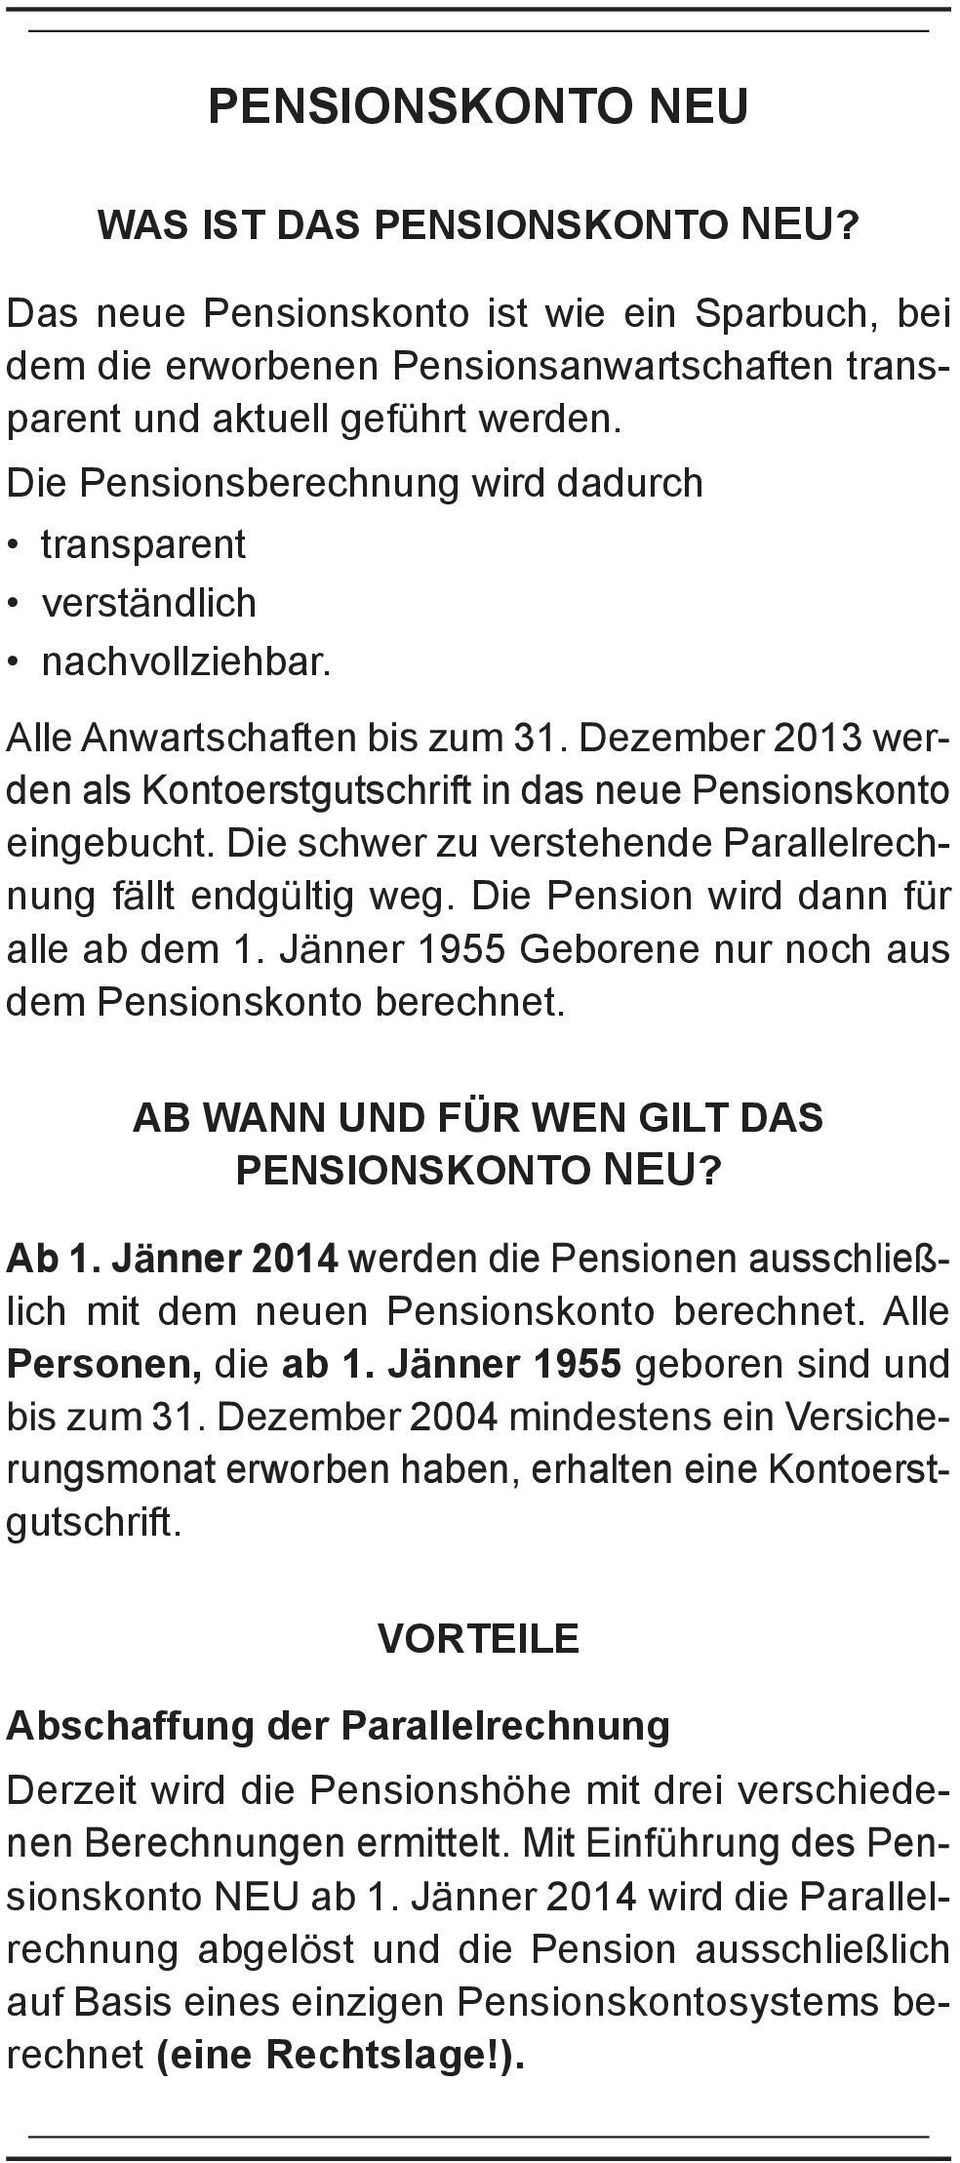 Die schwer zu verstehende Parallelrechnung fällt endgültig weg. Die Pension wird dann für alle ab dem 1. Jänner 1955 Geborene nur noch aus dem Pensionskonto berechnet.